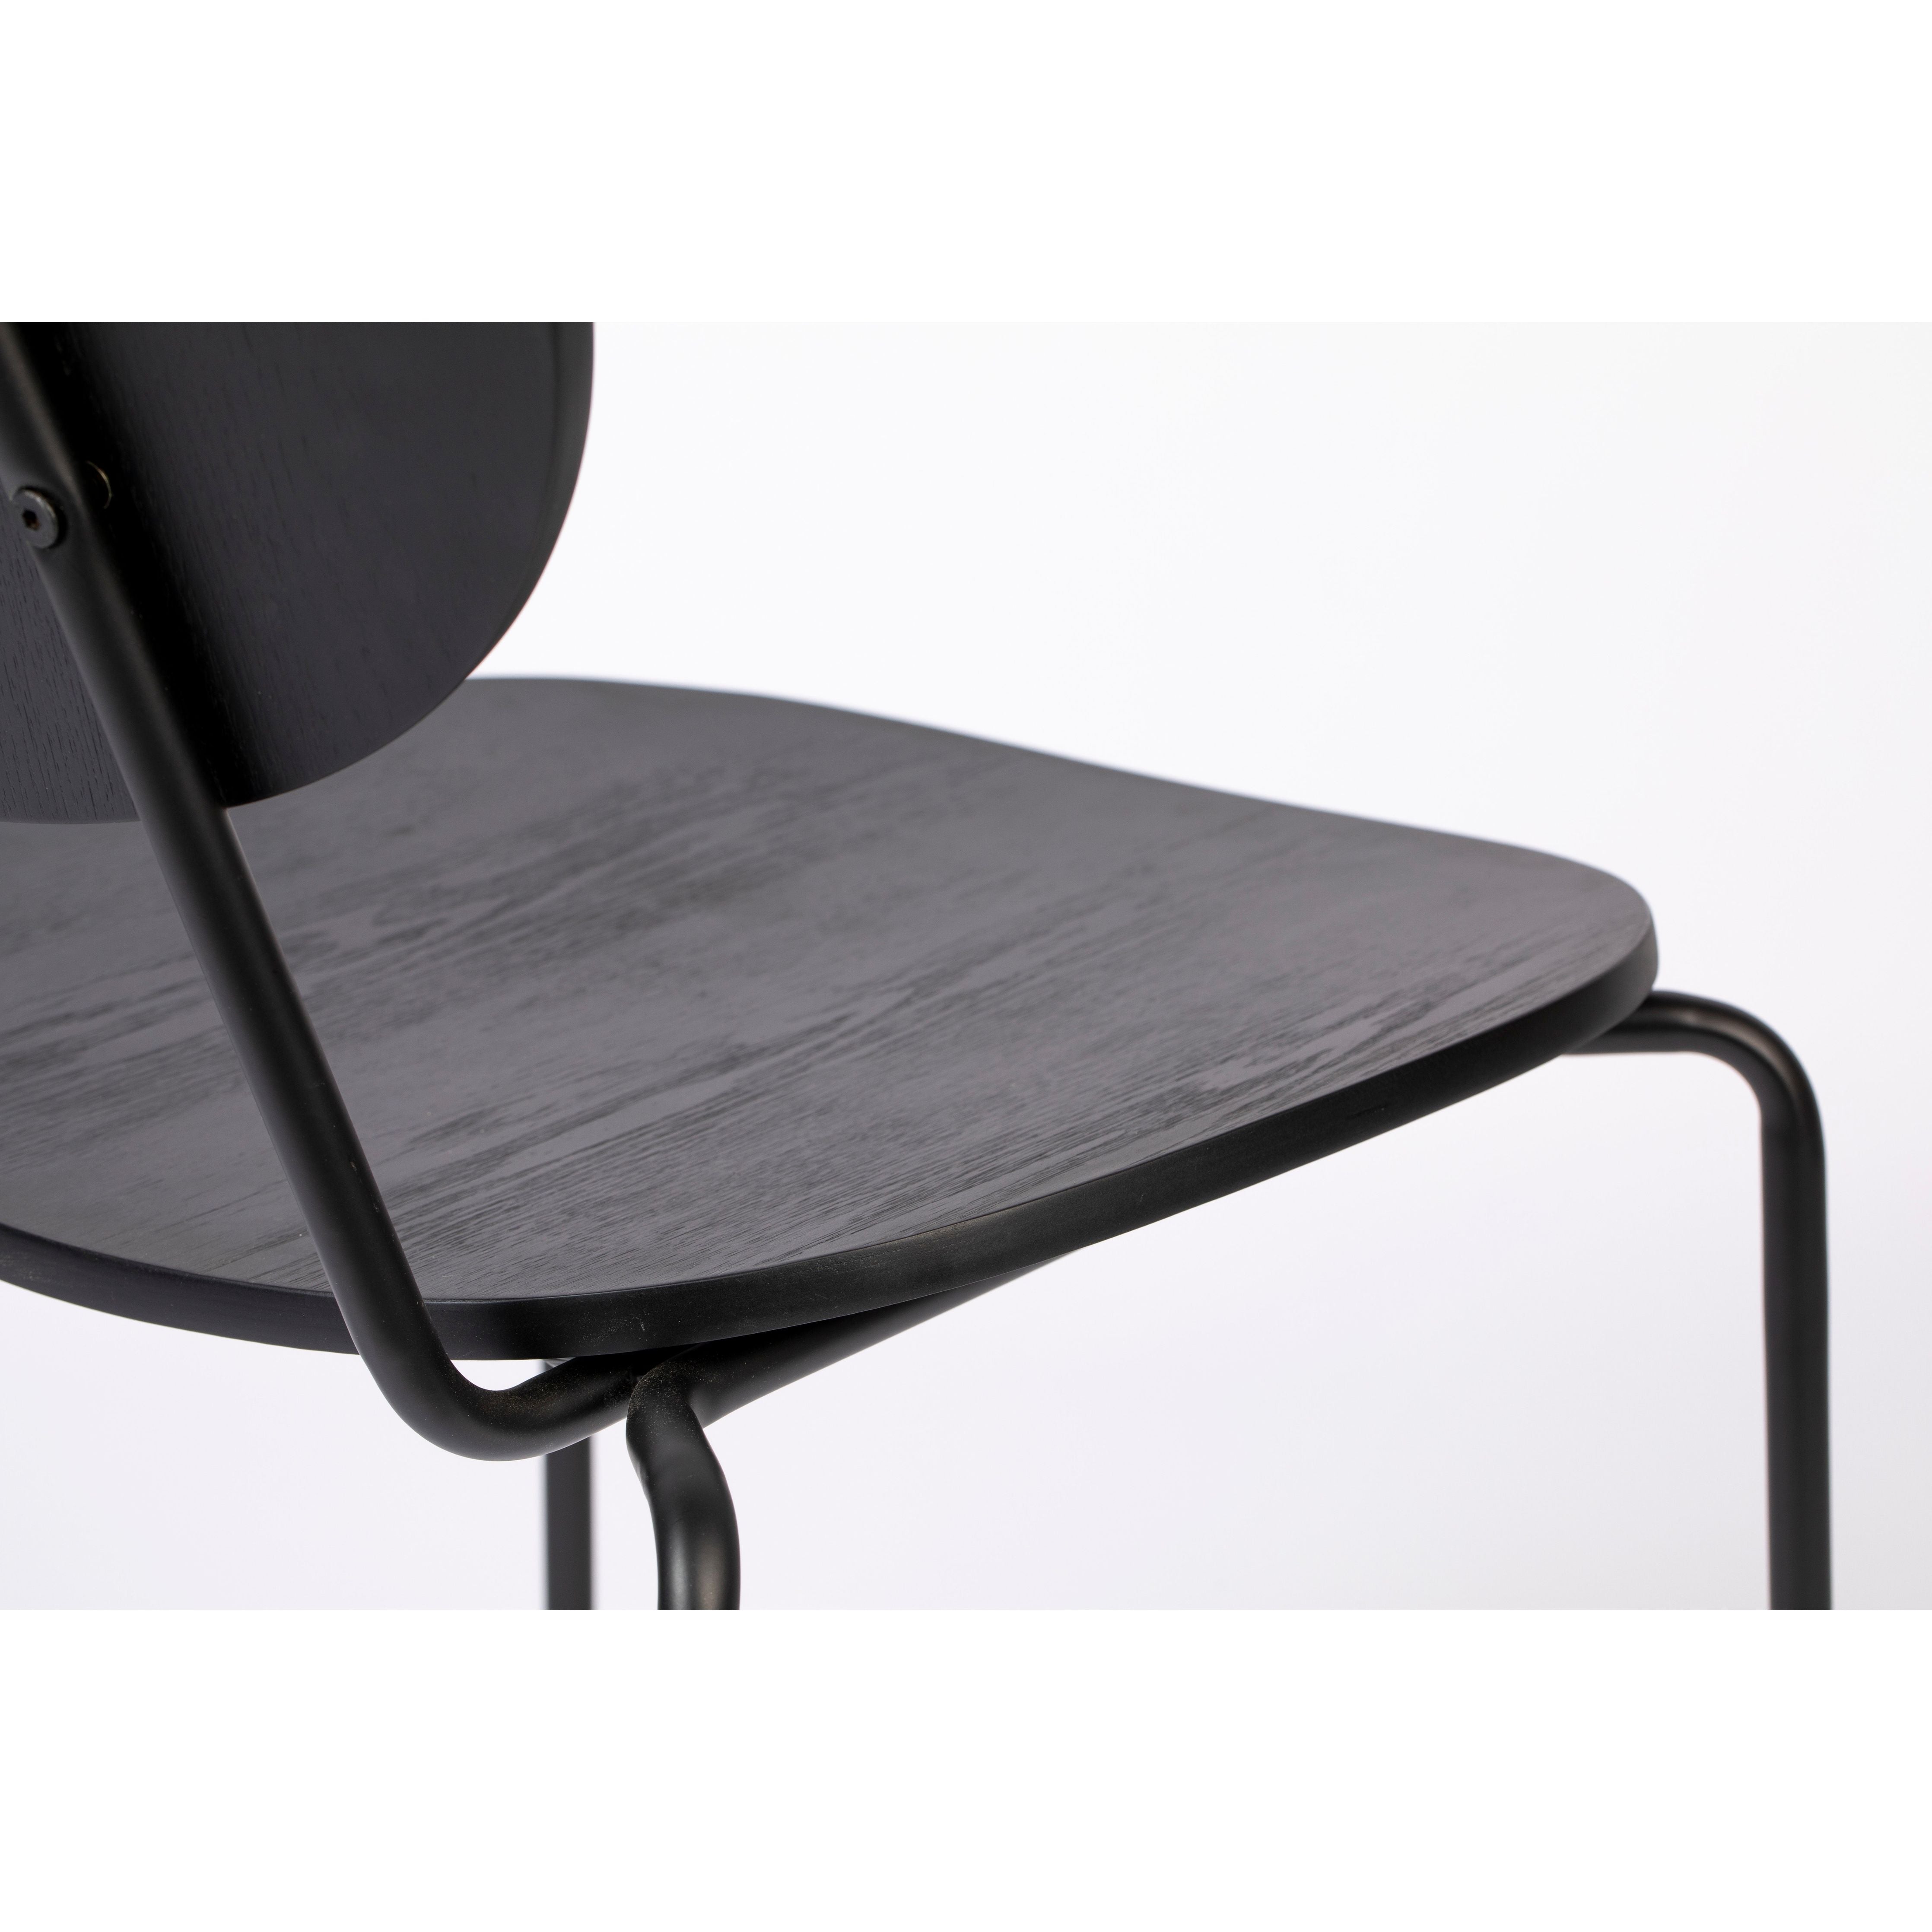 Chair aspen wood black | 2 pieces